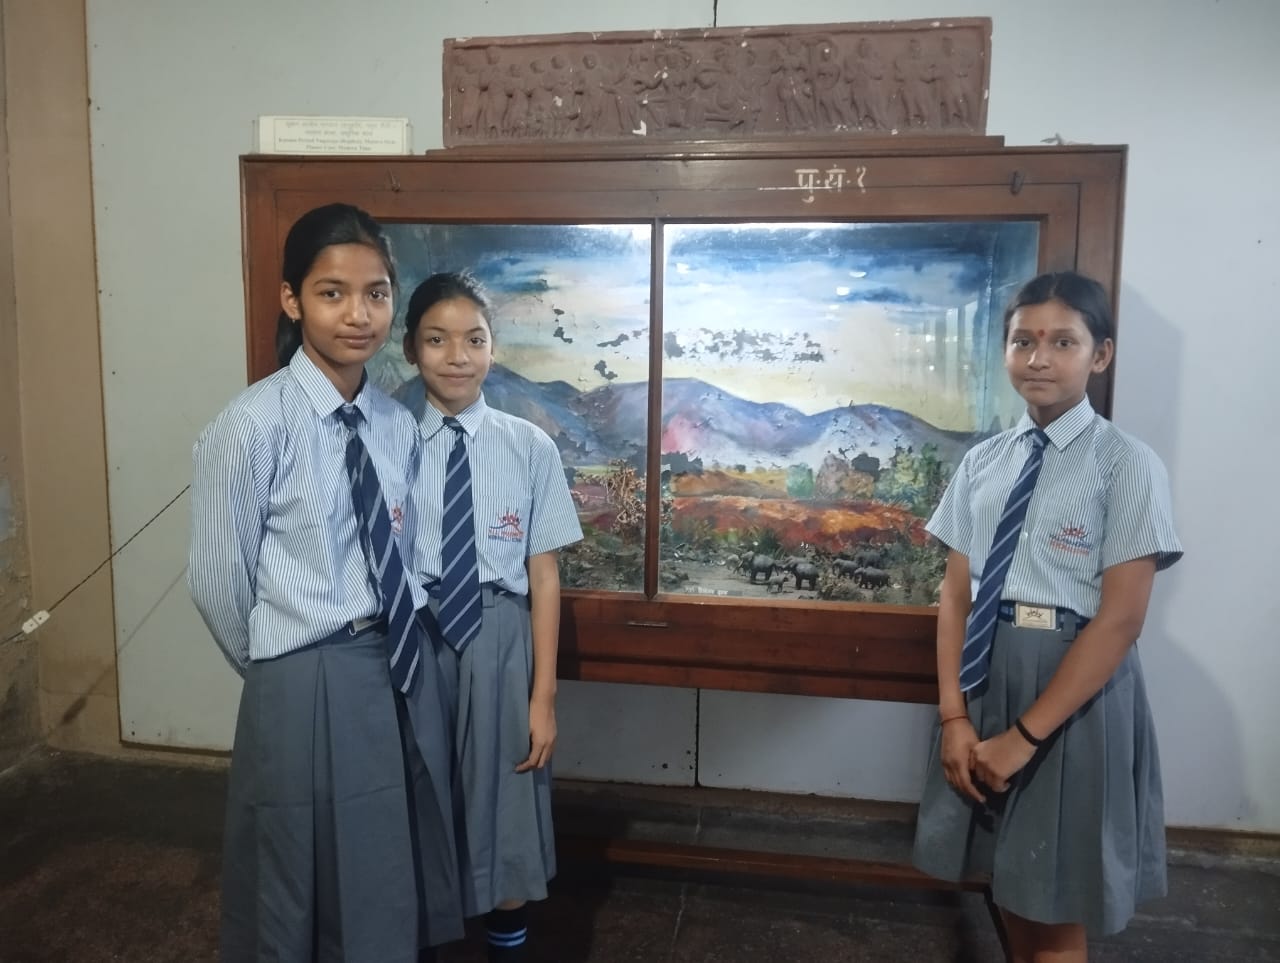 मां आनंदमयी मेमोरियल स्कूल के विद्यार्थियों ने किया गुरुकुल विवि के पुरातत्व संग्रहालय का शैक्षणिक दौरा